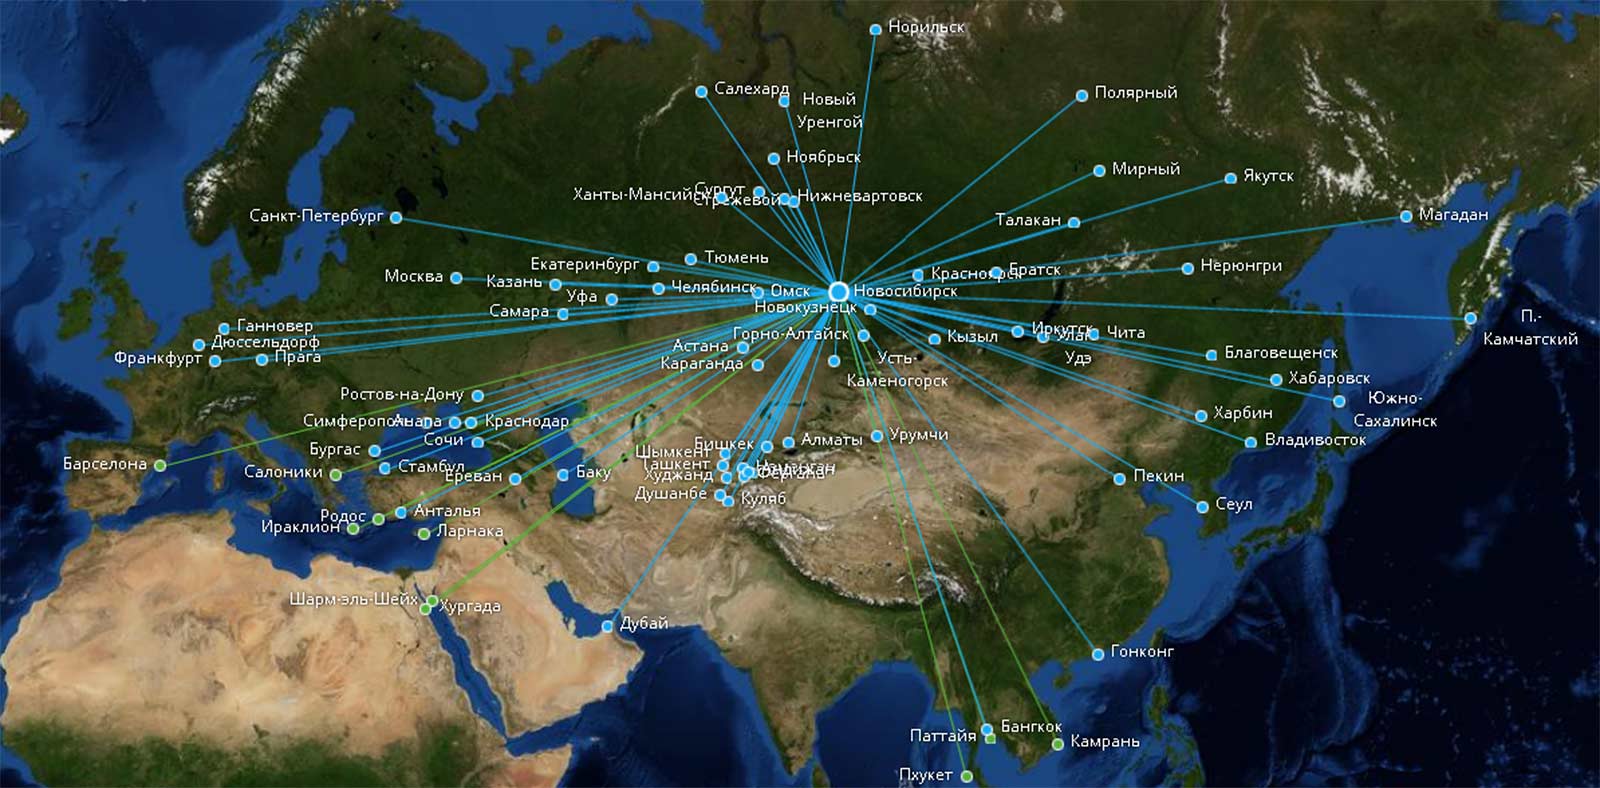 Все о белоярском аэропорте: описание, расположение, маршруты на карте